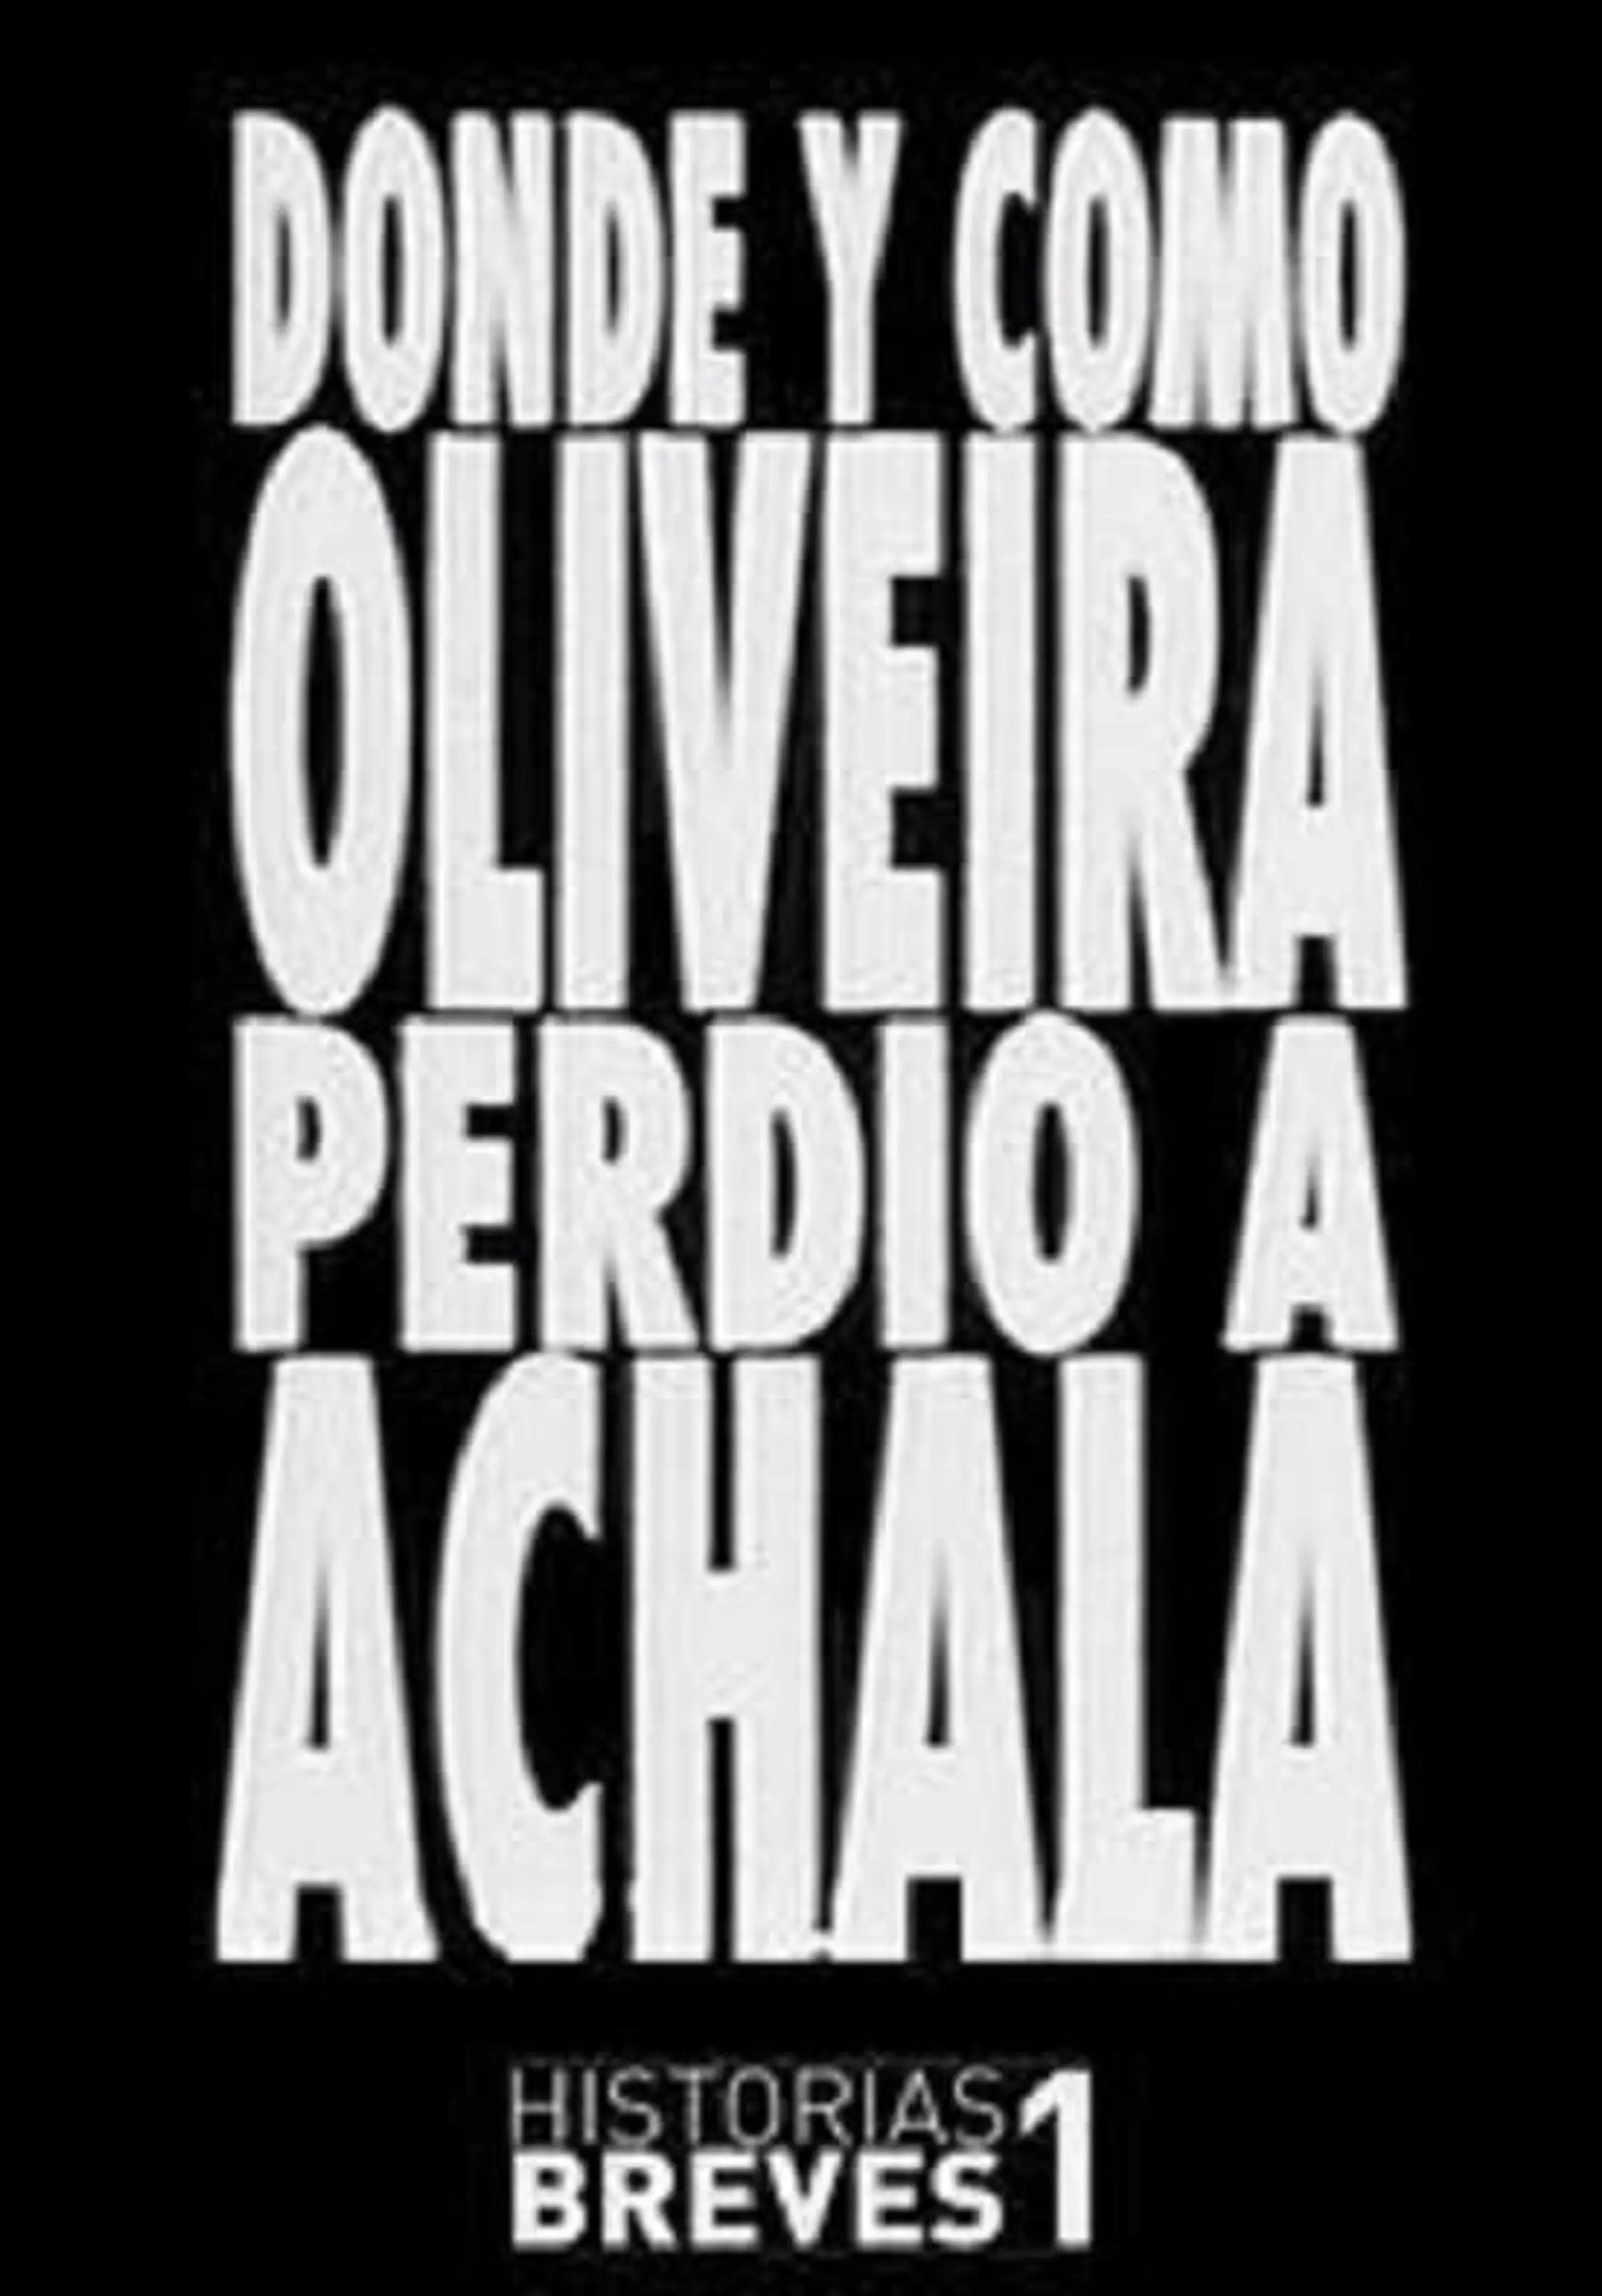 Dónde y cómo Oliveira perdió a Achala